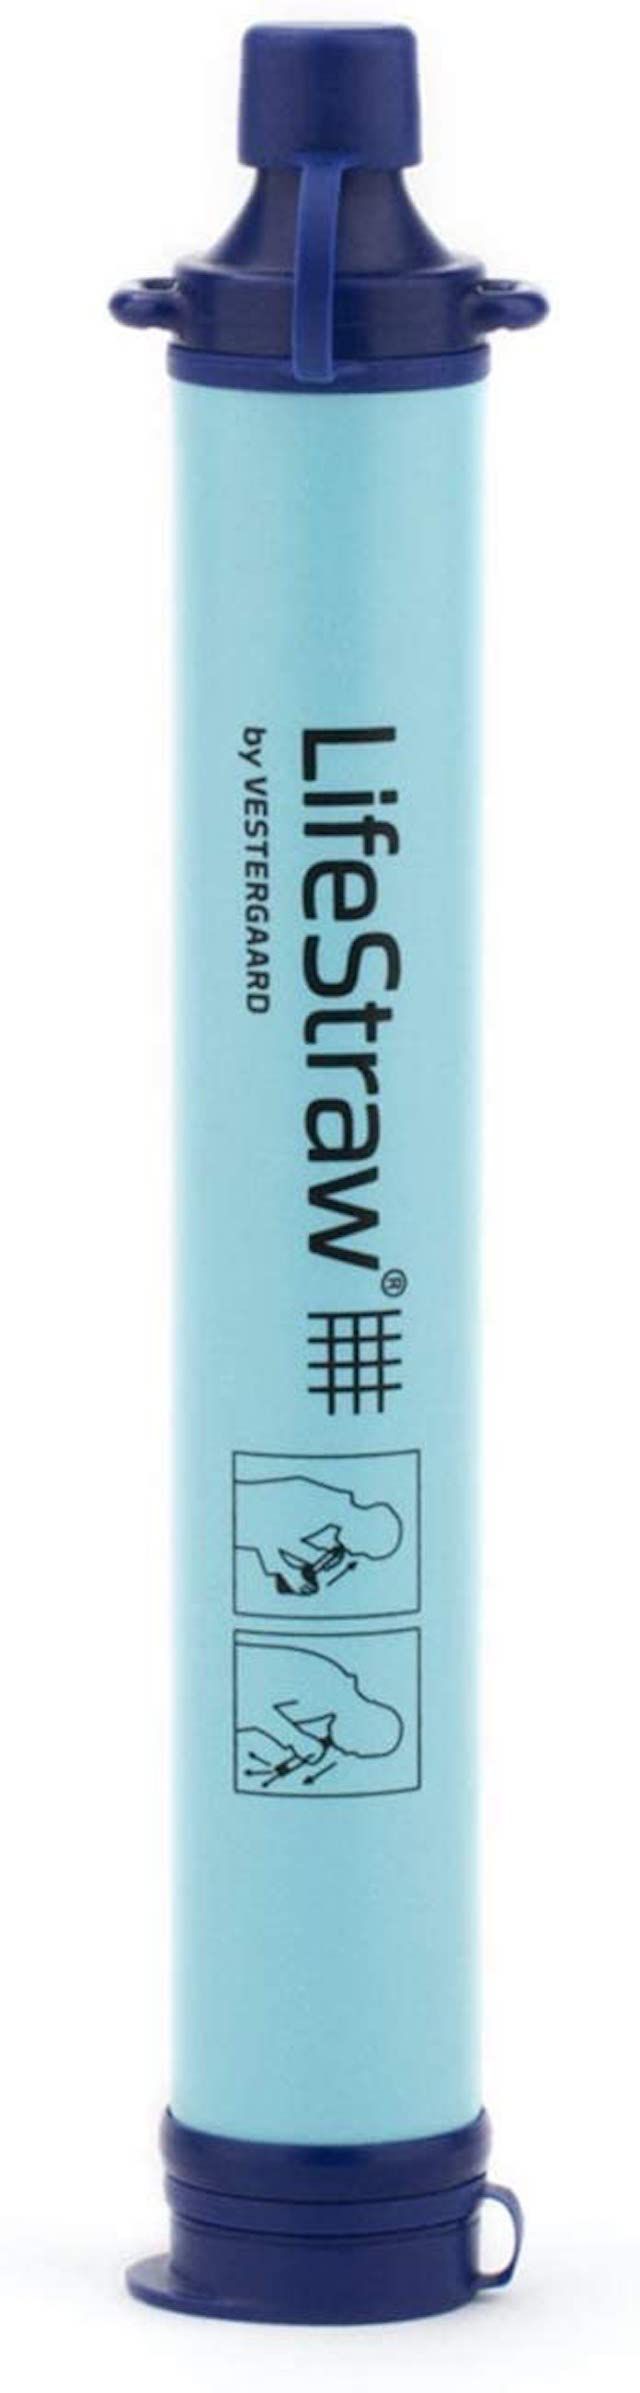 LifeStraw Persoonlijk Waterfilter